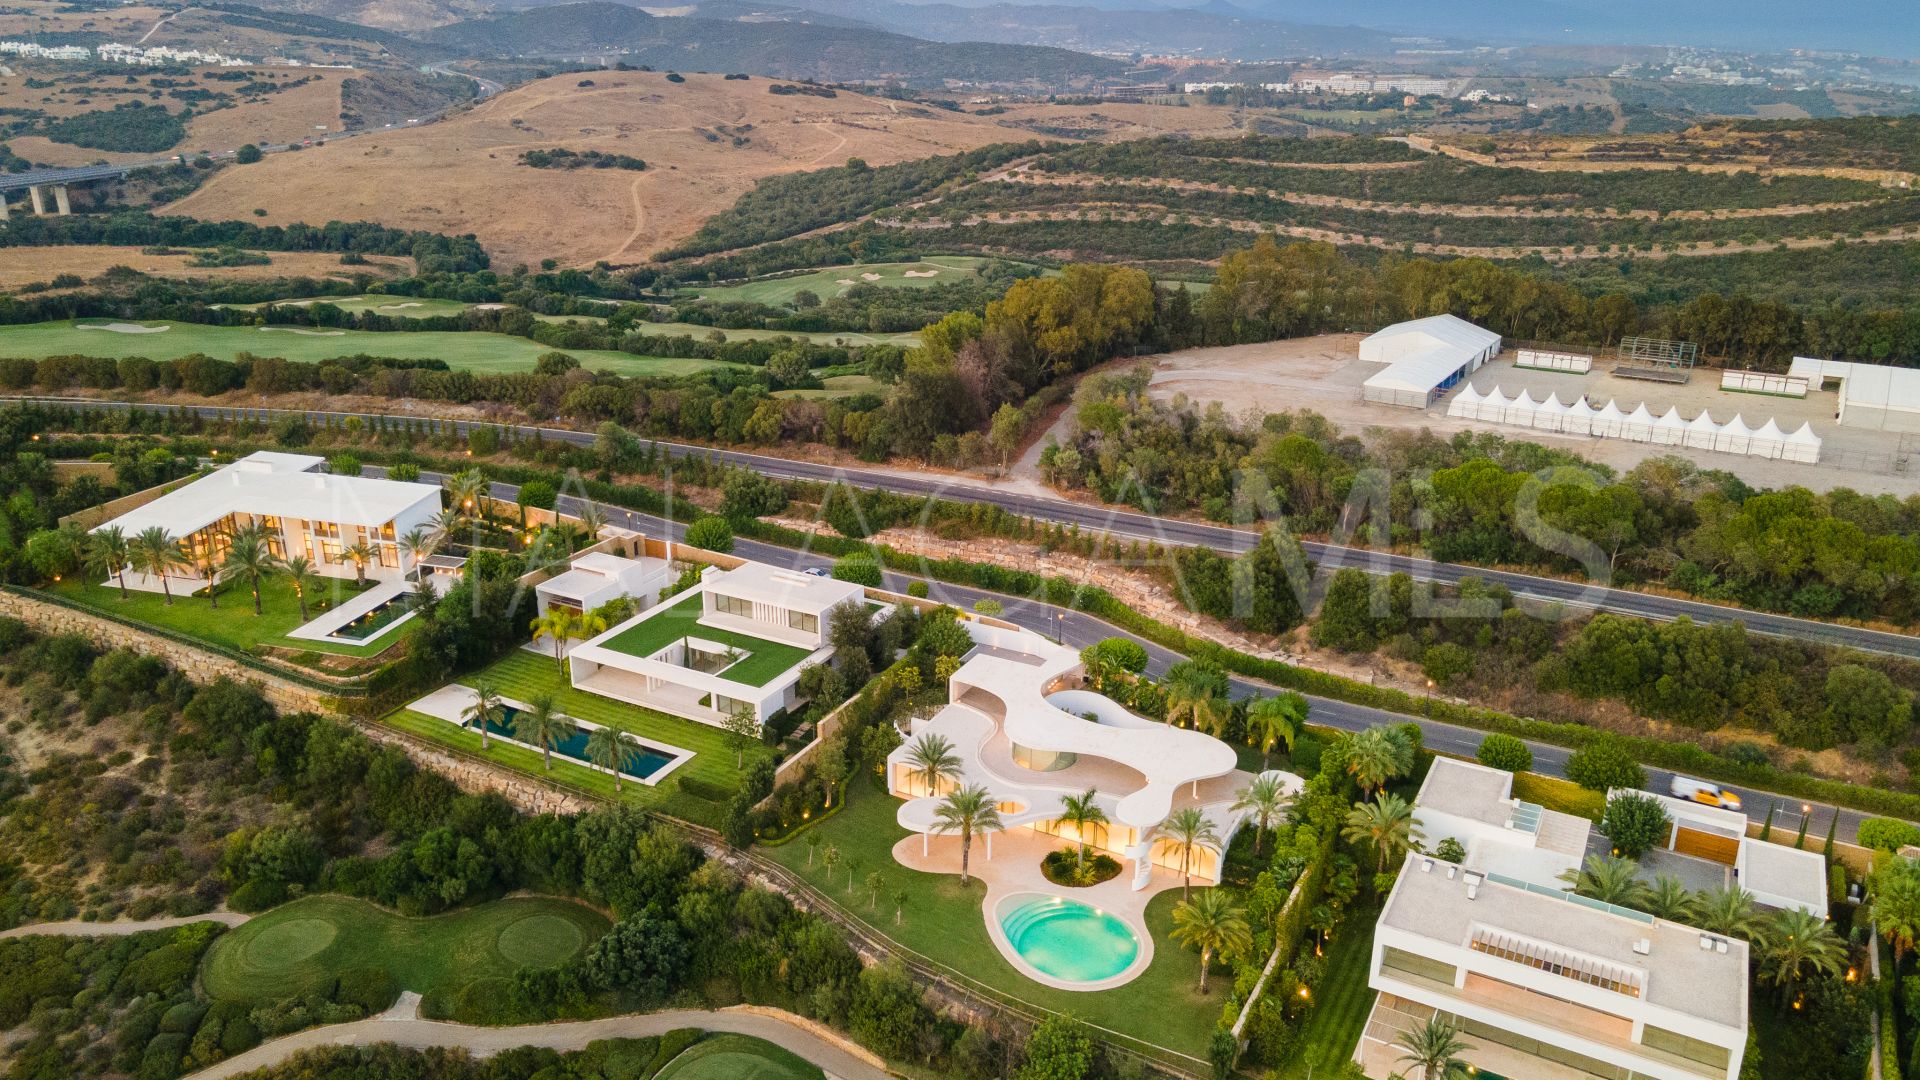 4 bedrooms villa in Casares Montaña for sale